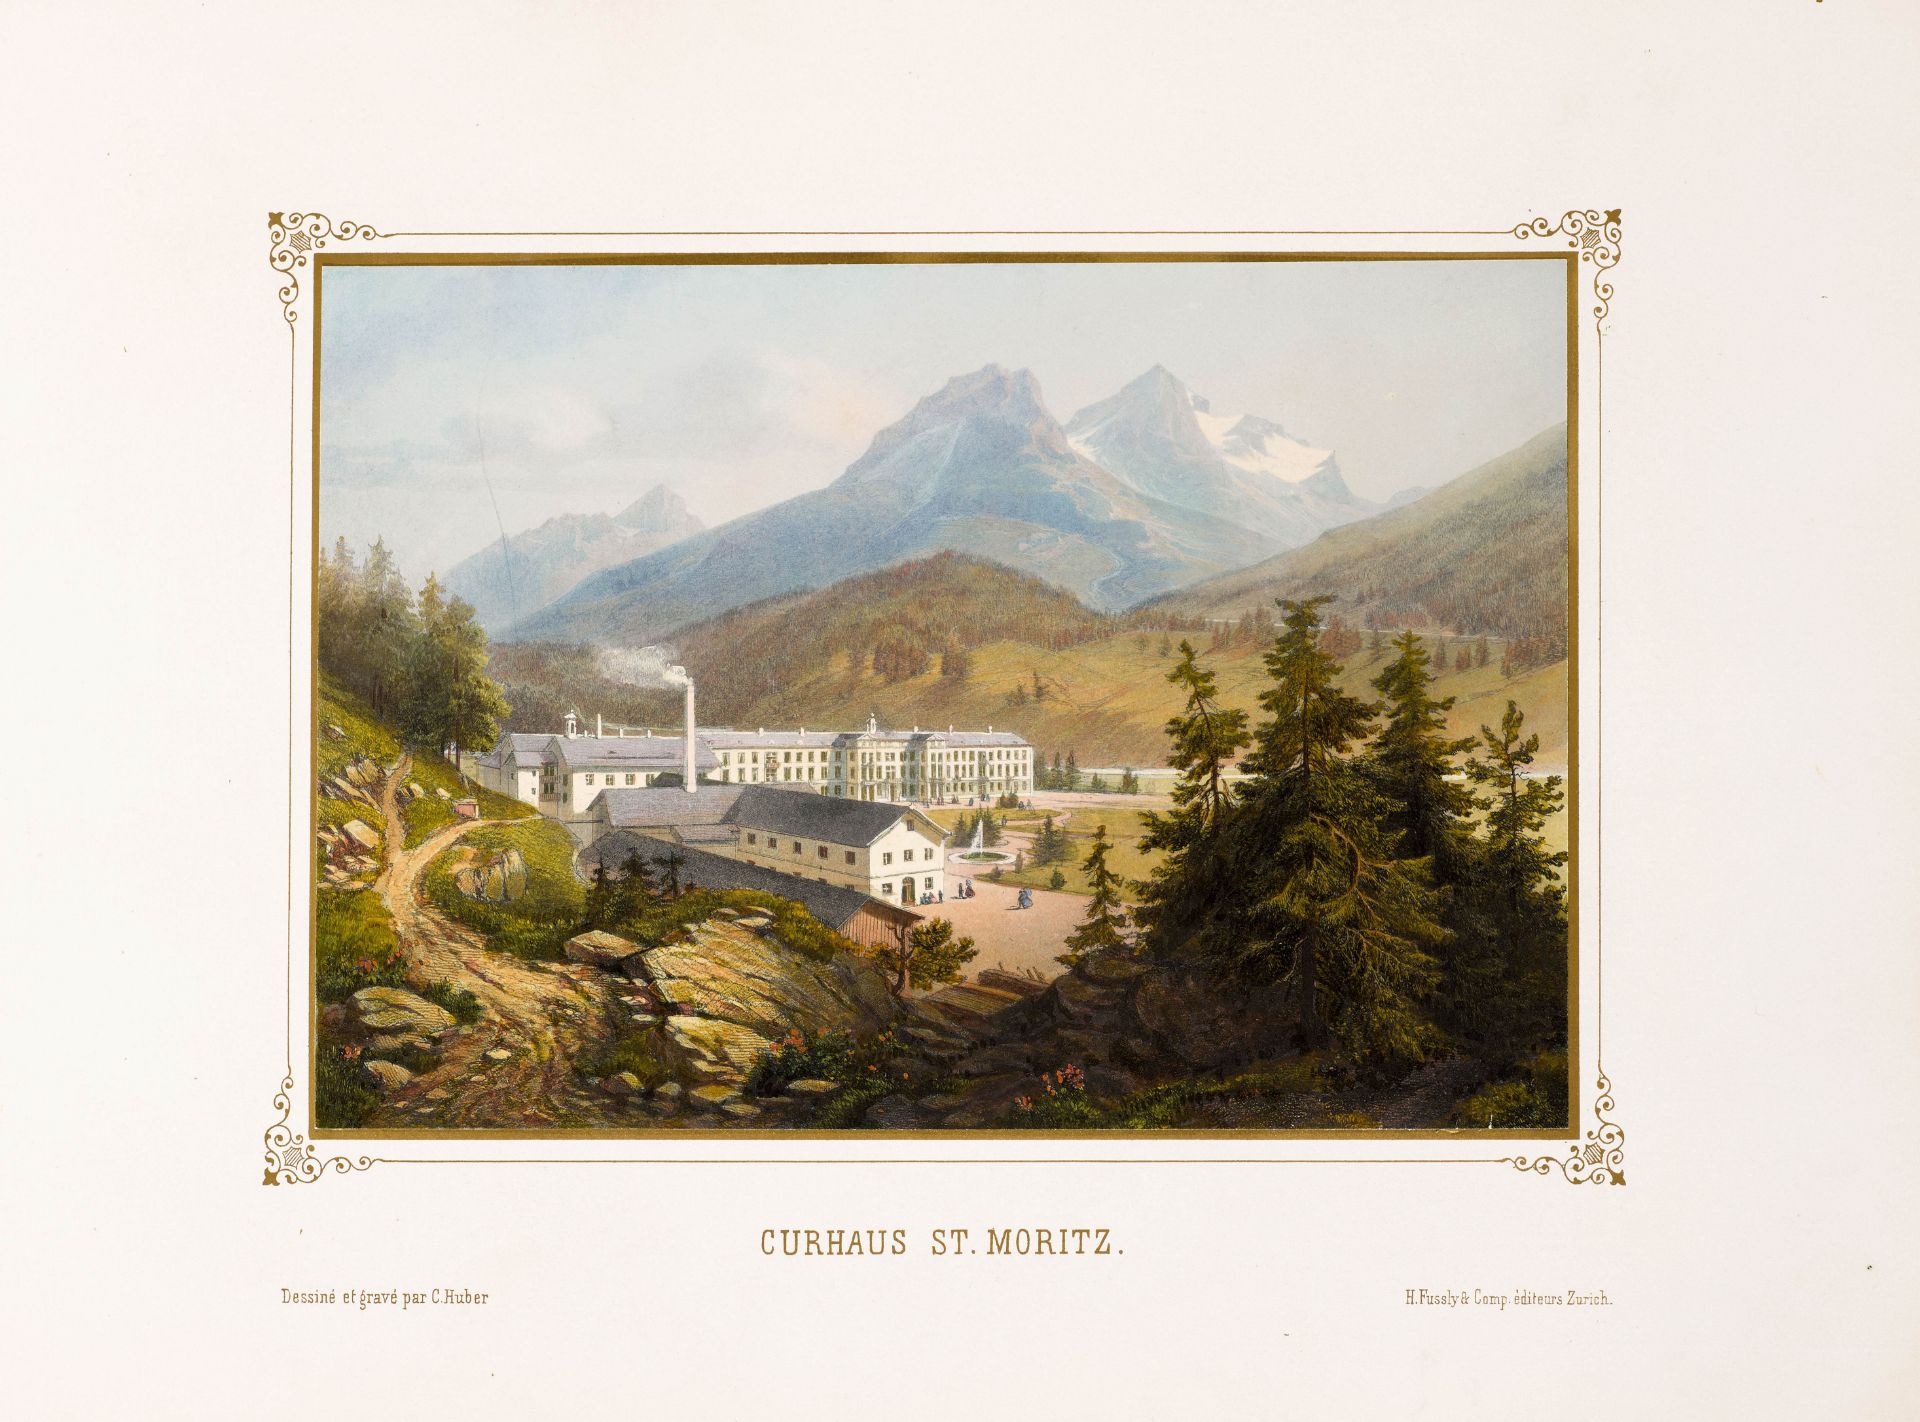 GRAUBÜNDEN -Huber, C[aspar].Album von St. Moritz in Oberengadin Ct. Graubünden. Mit gest. kolor. - Image 2 of 3